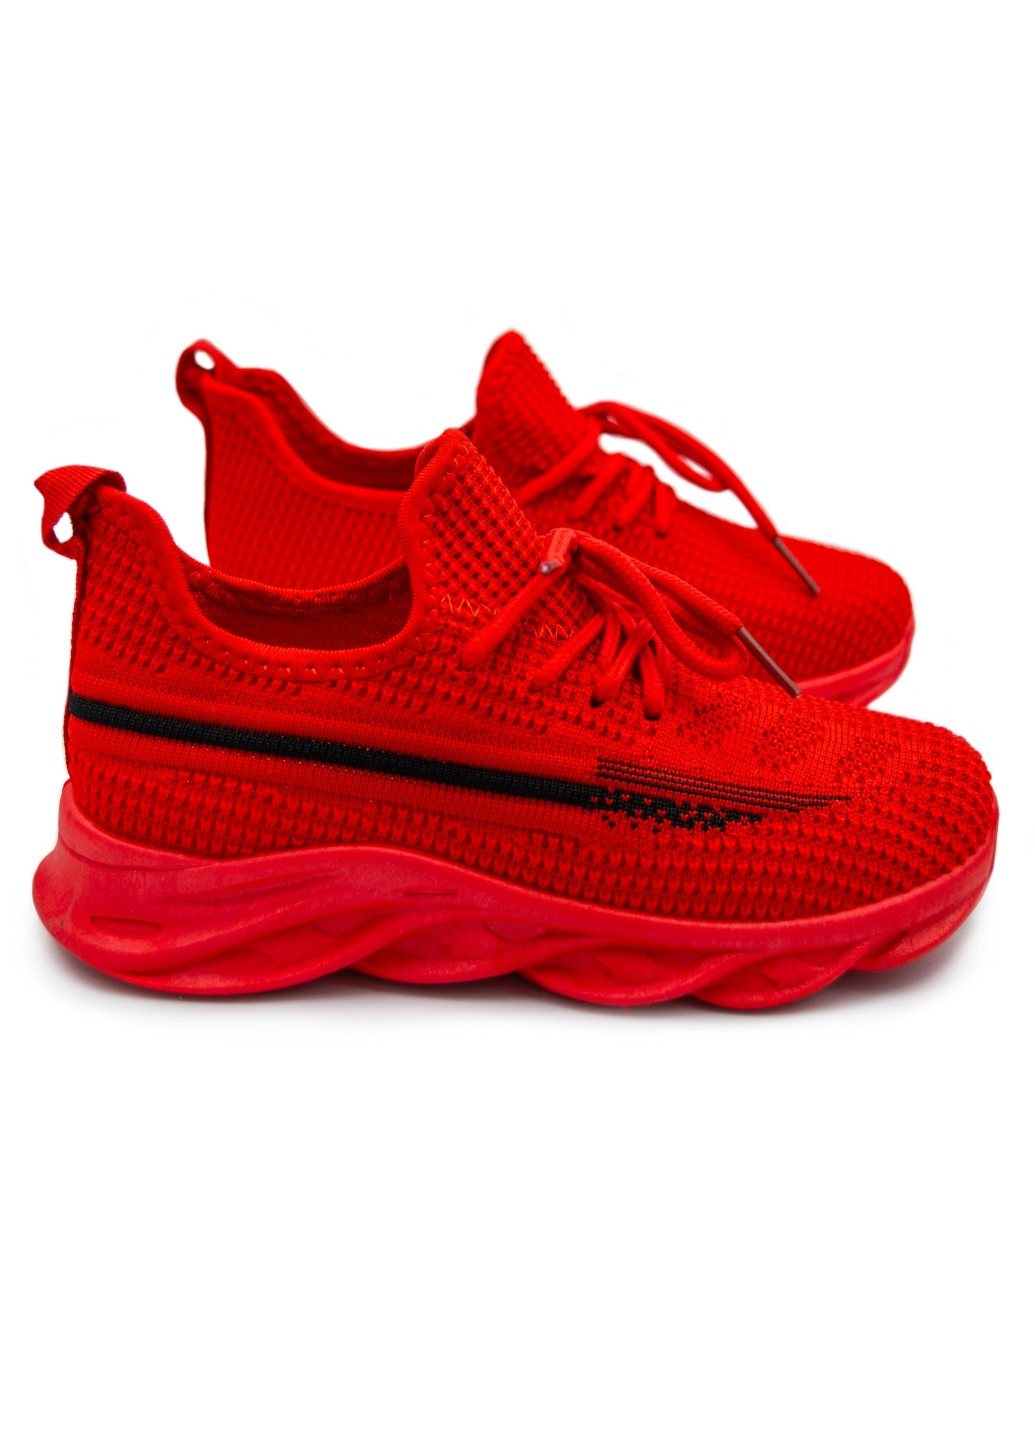 Красные всесезонные детские кроссовки для девочки Lilin Shoes